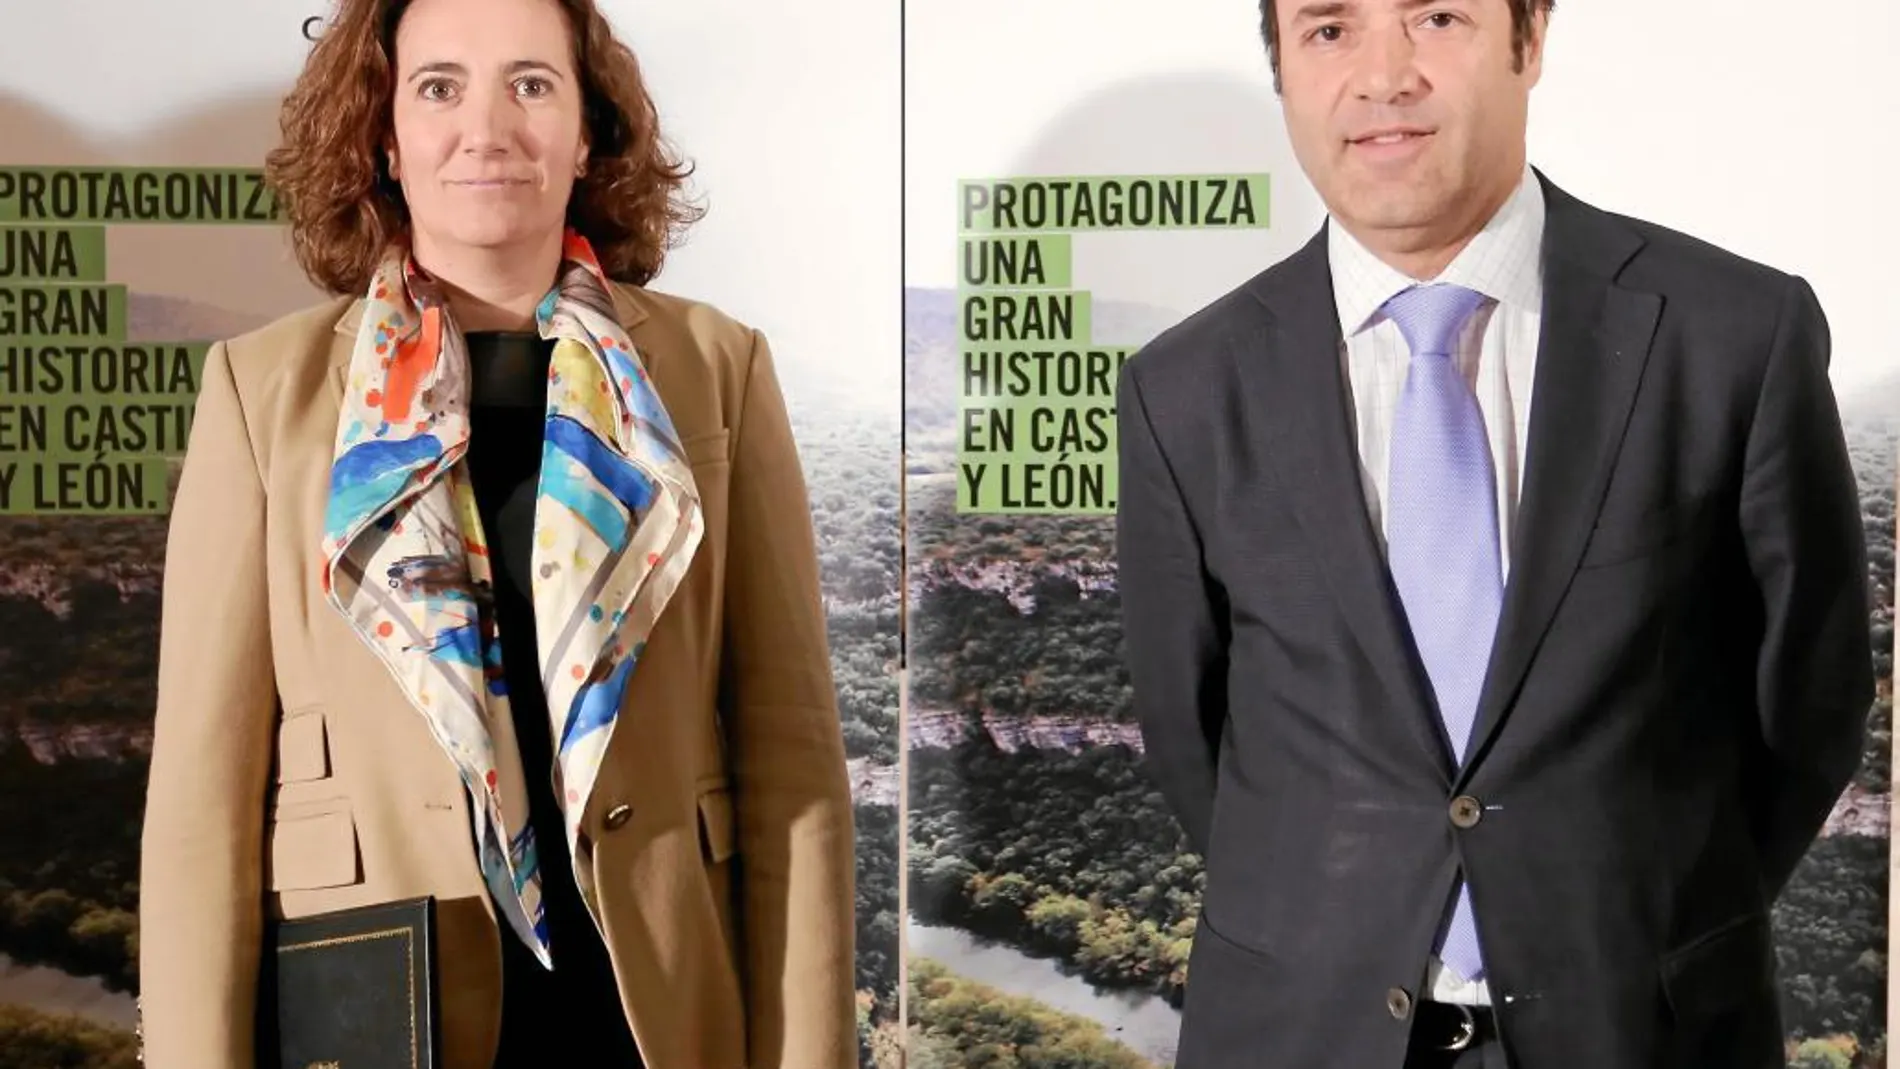 La consejera de Cultura y Turismo, María Josefa García Cirac, junto al director de Turismo, Javier Ramírez